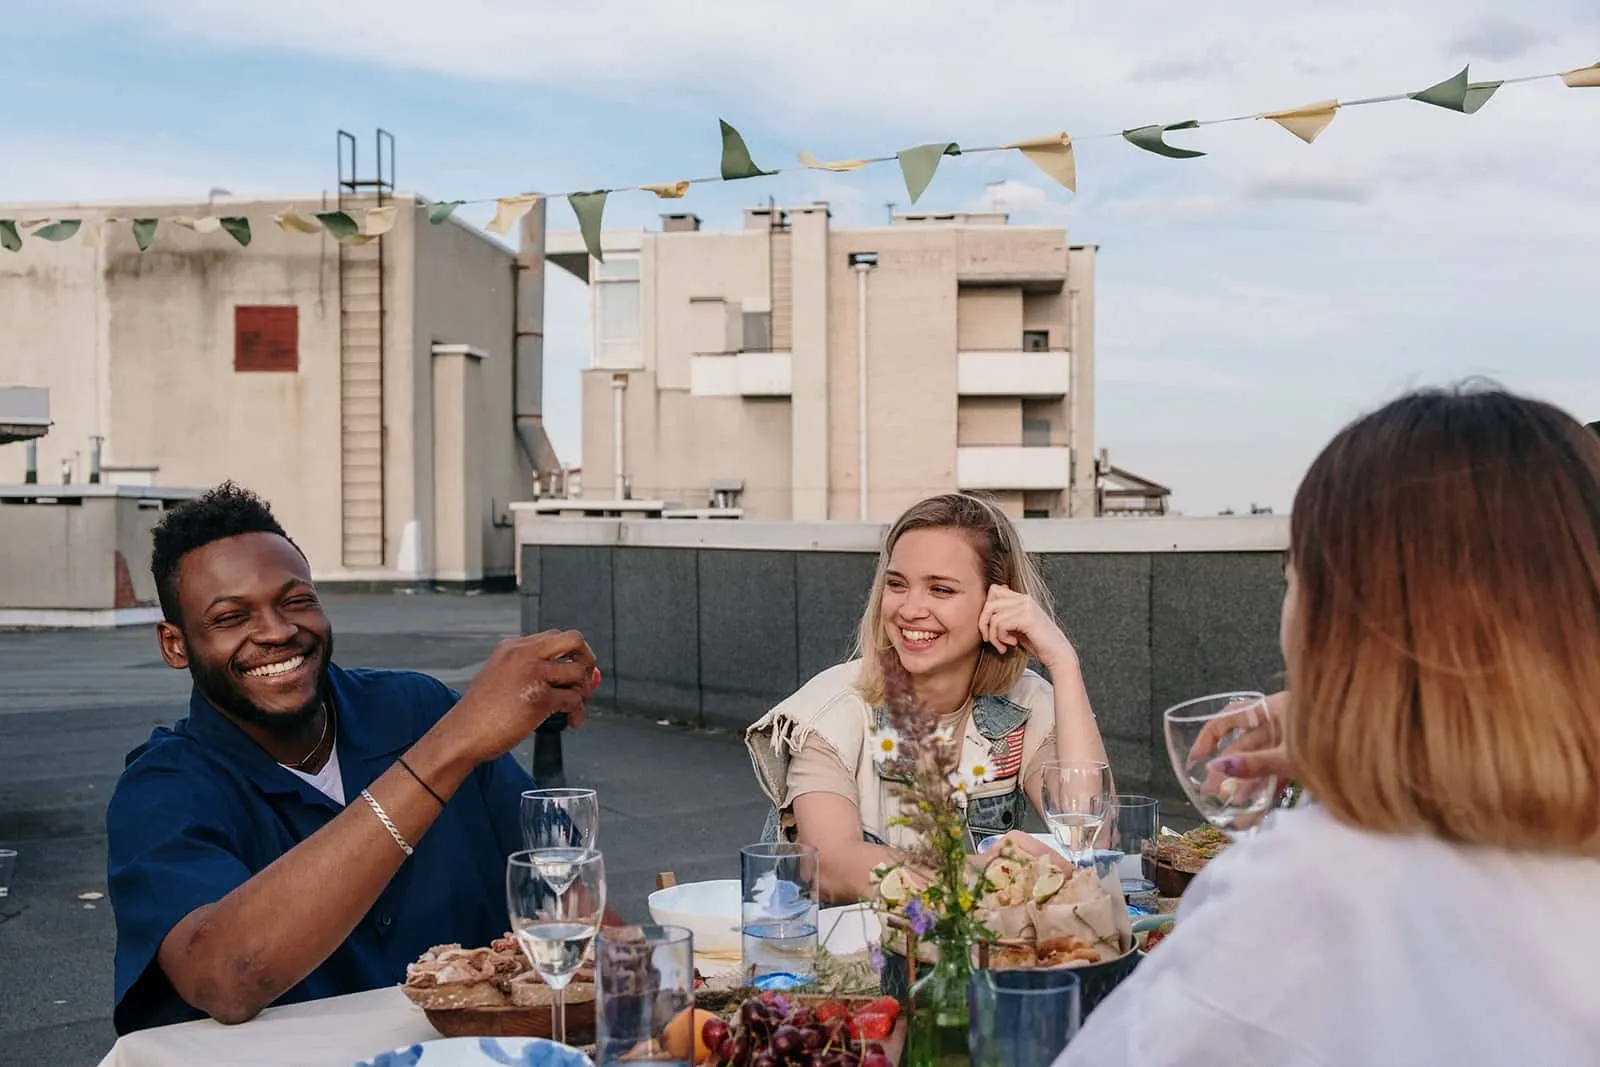 eine lächelnde Frau, die einen lächelnden Mann betrachtet, der mit Freunden auf dem Dach am Tisch sitzt